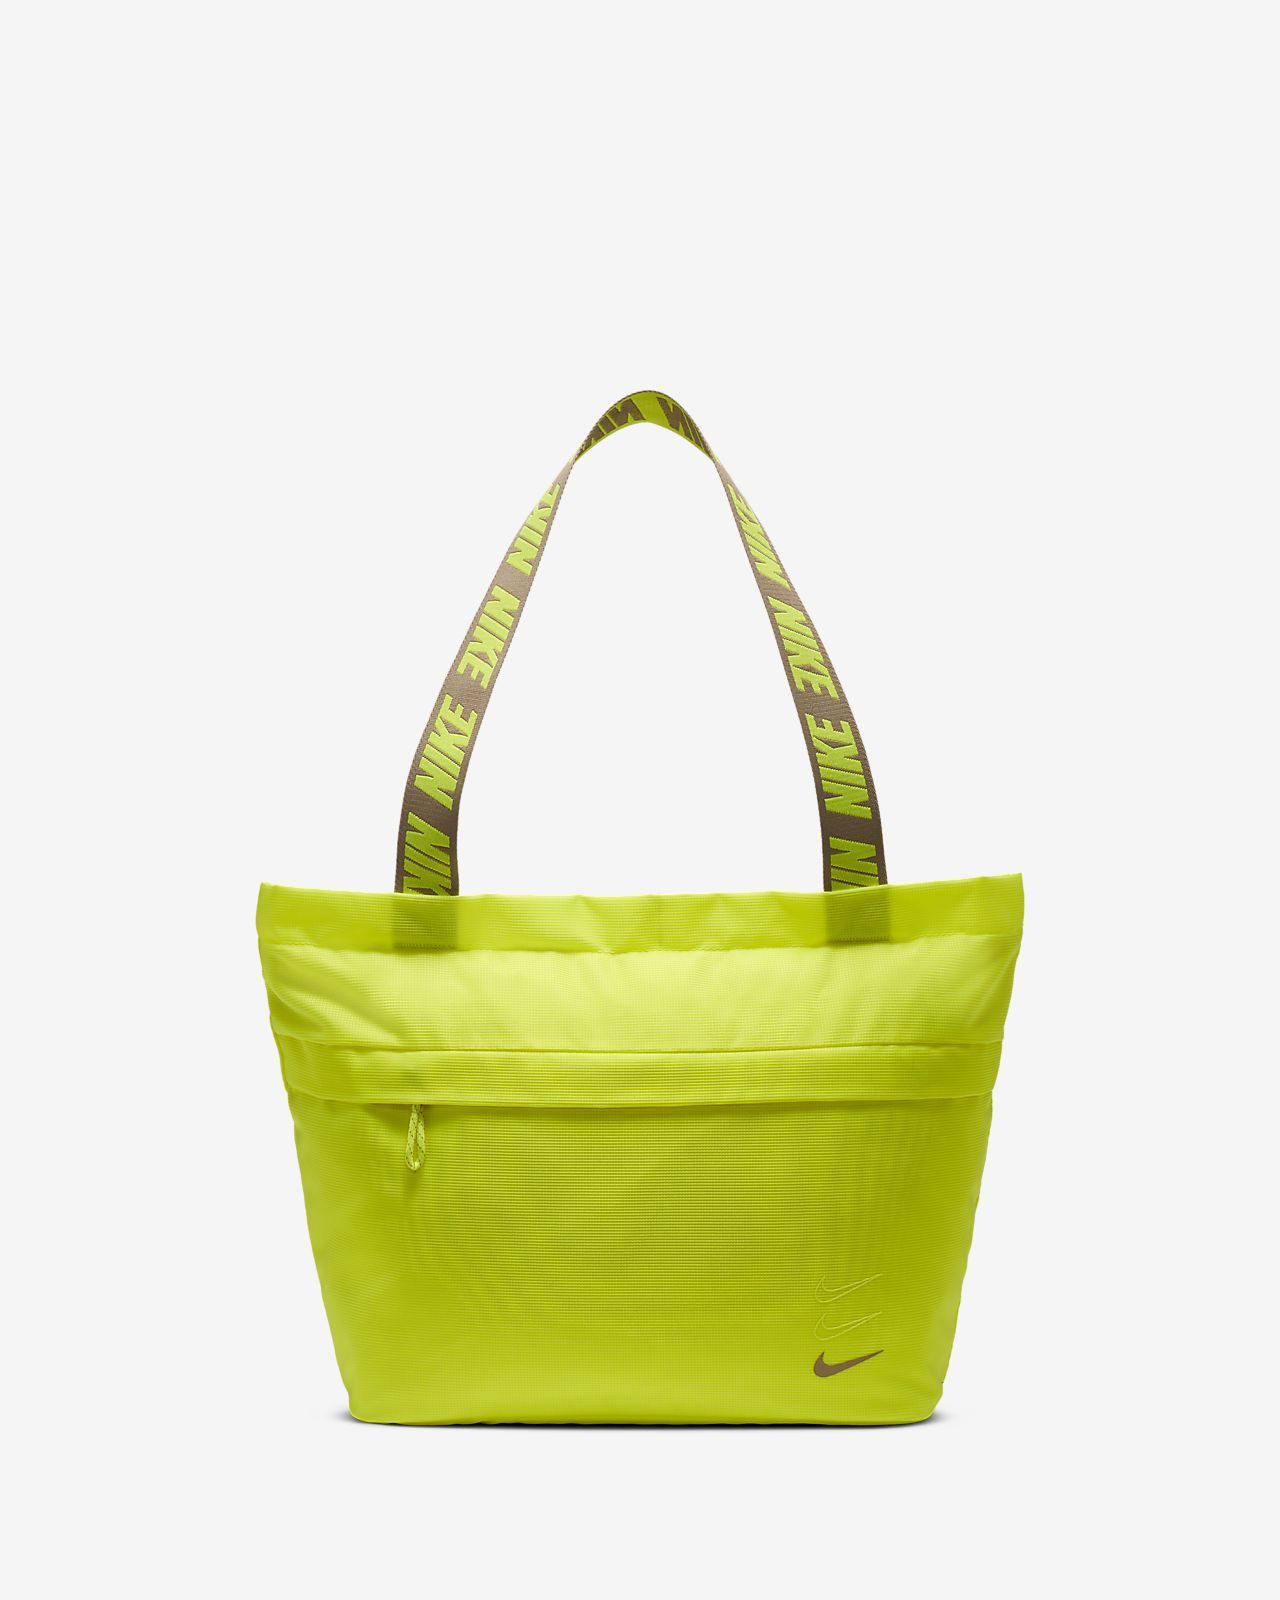 nike green bag